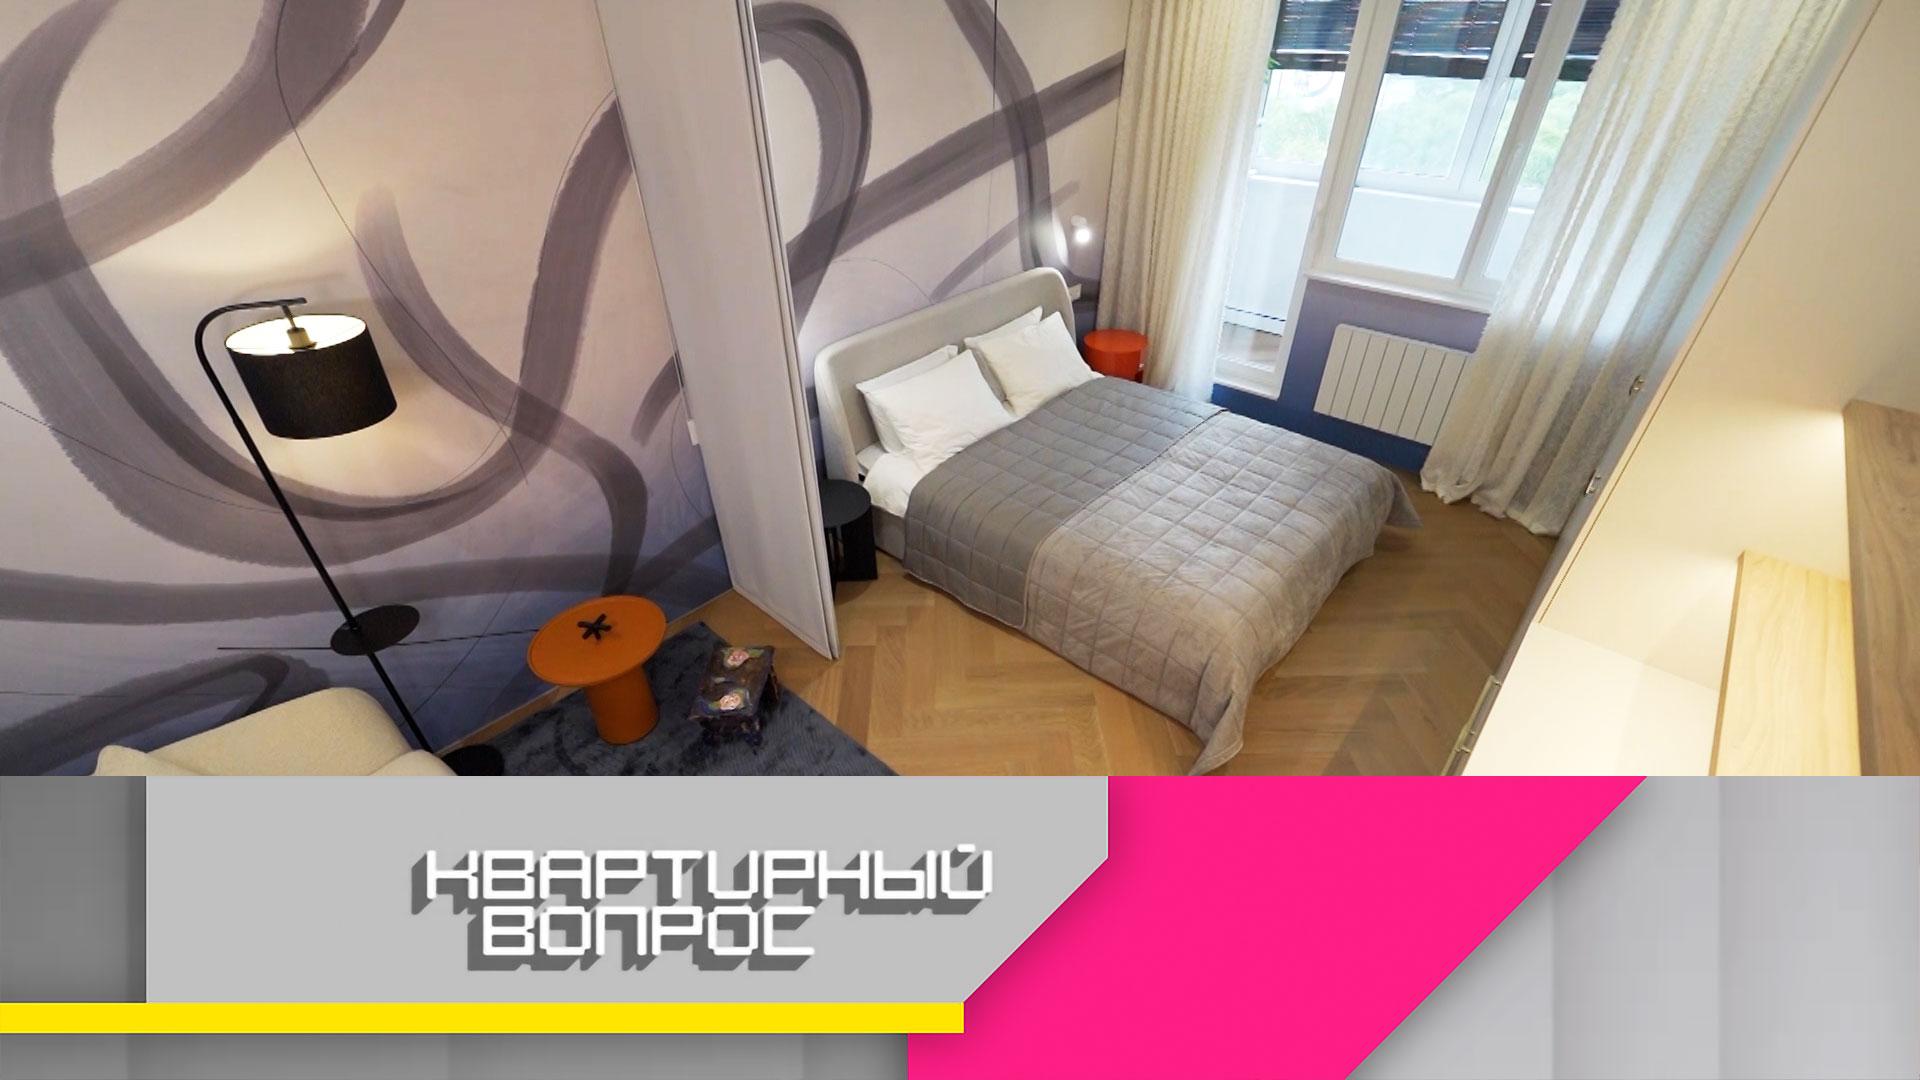 Спальня-гостиная с абстрактной росписью для семьи путешественников | «Квартирный вопрос»